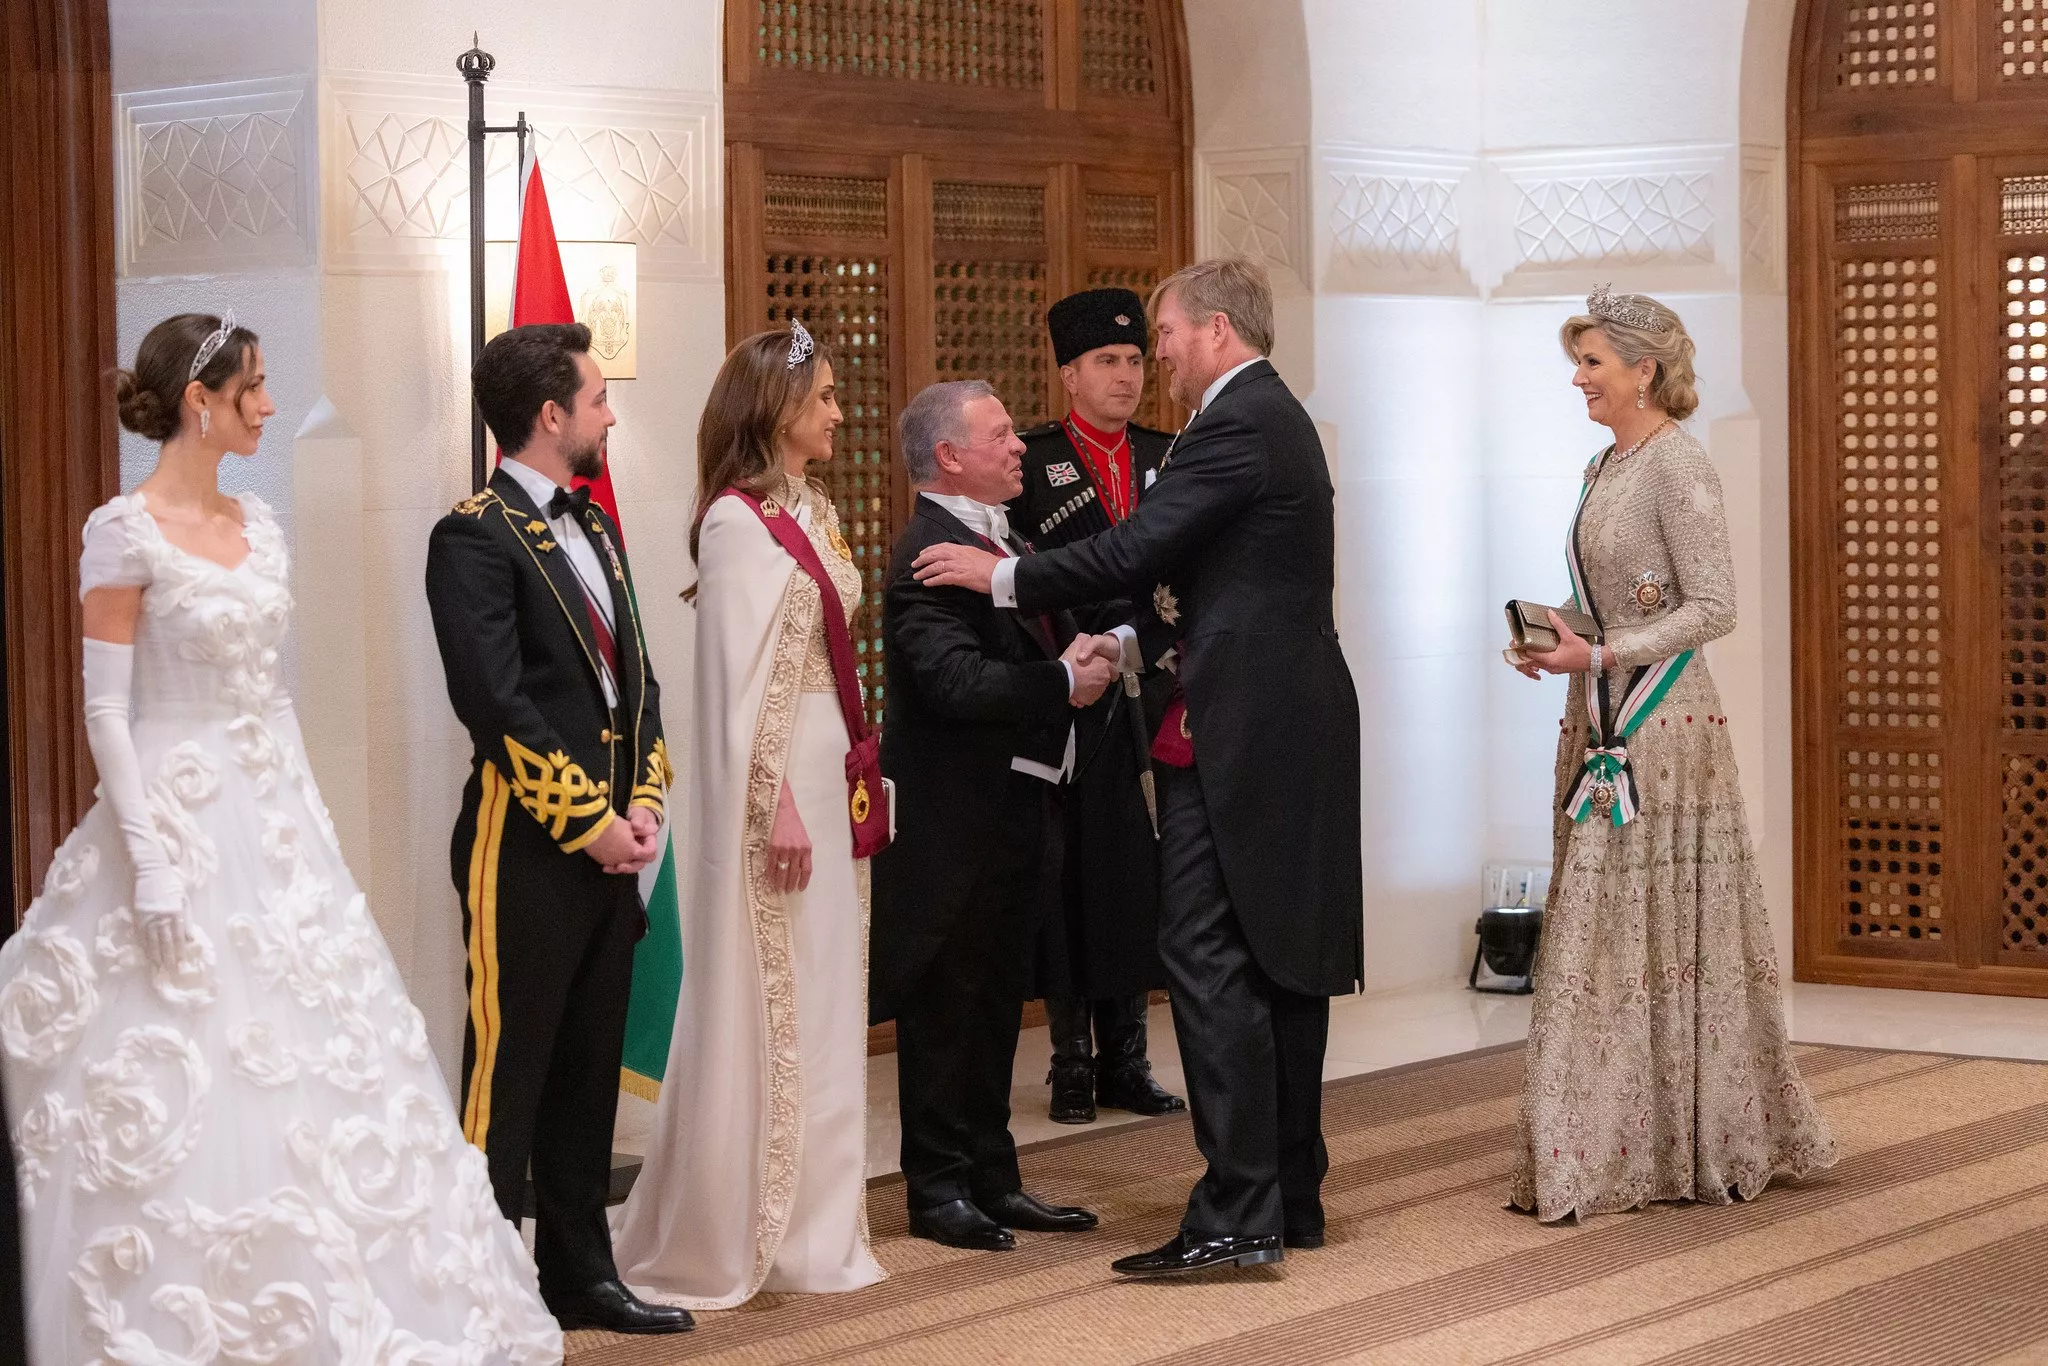 لوك الملكة رانيا الثاني في زفاف الامير حسين ورجوة ال سيف: ملوكي إلى أقصى الحدود